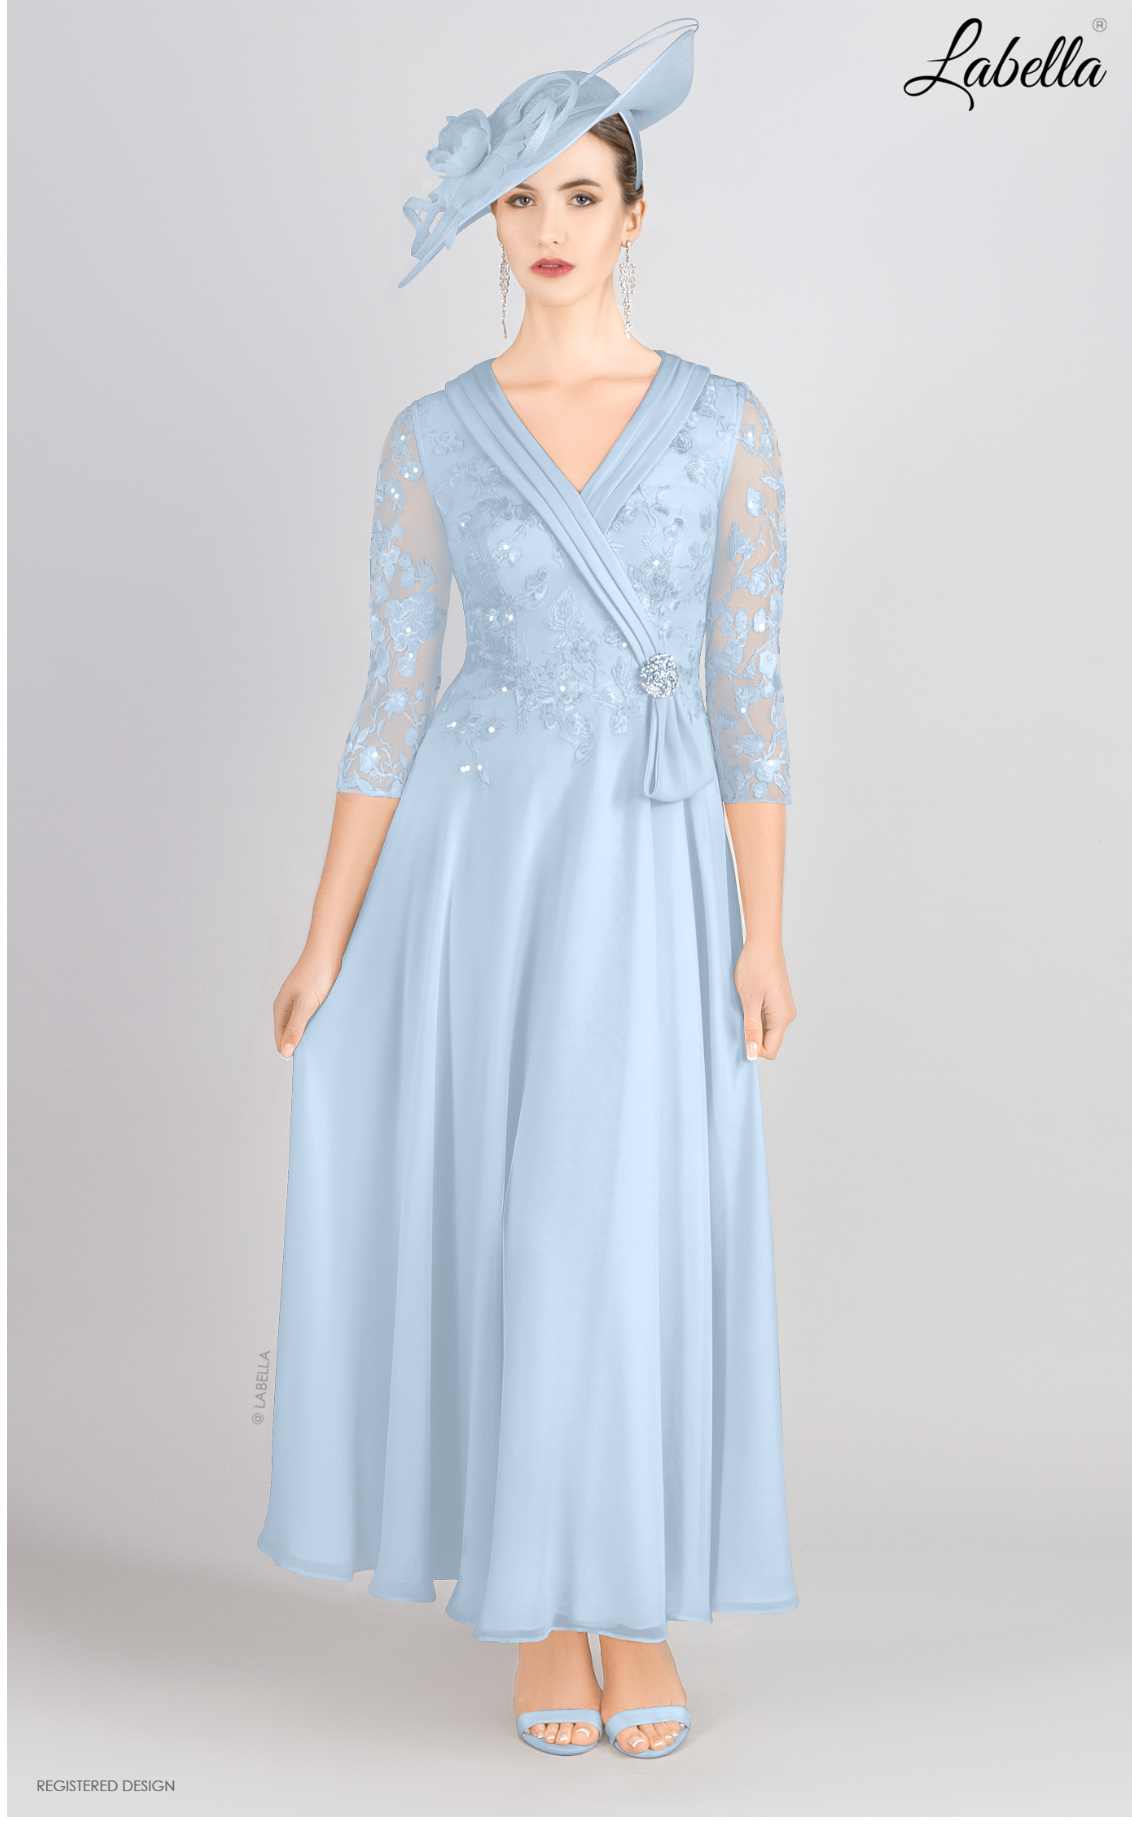 Light Blue V Neck Dress With Lace Bodice